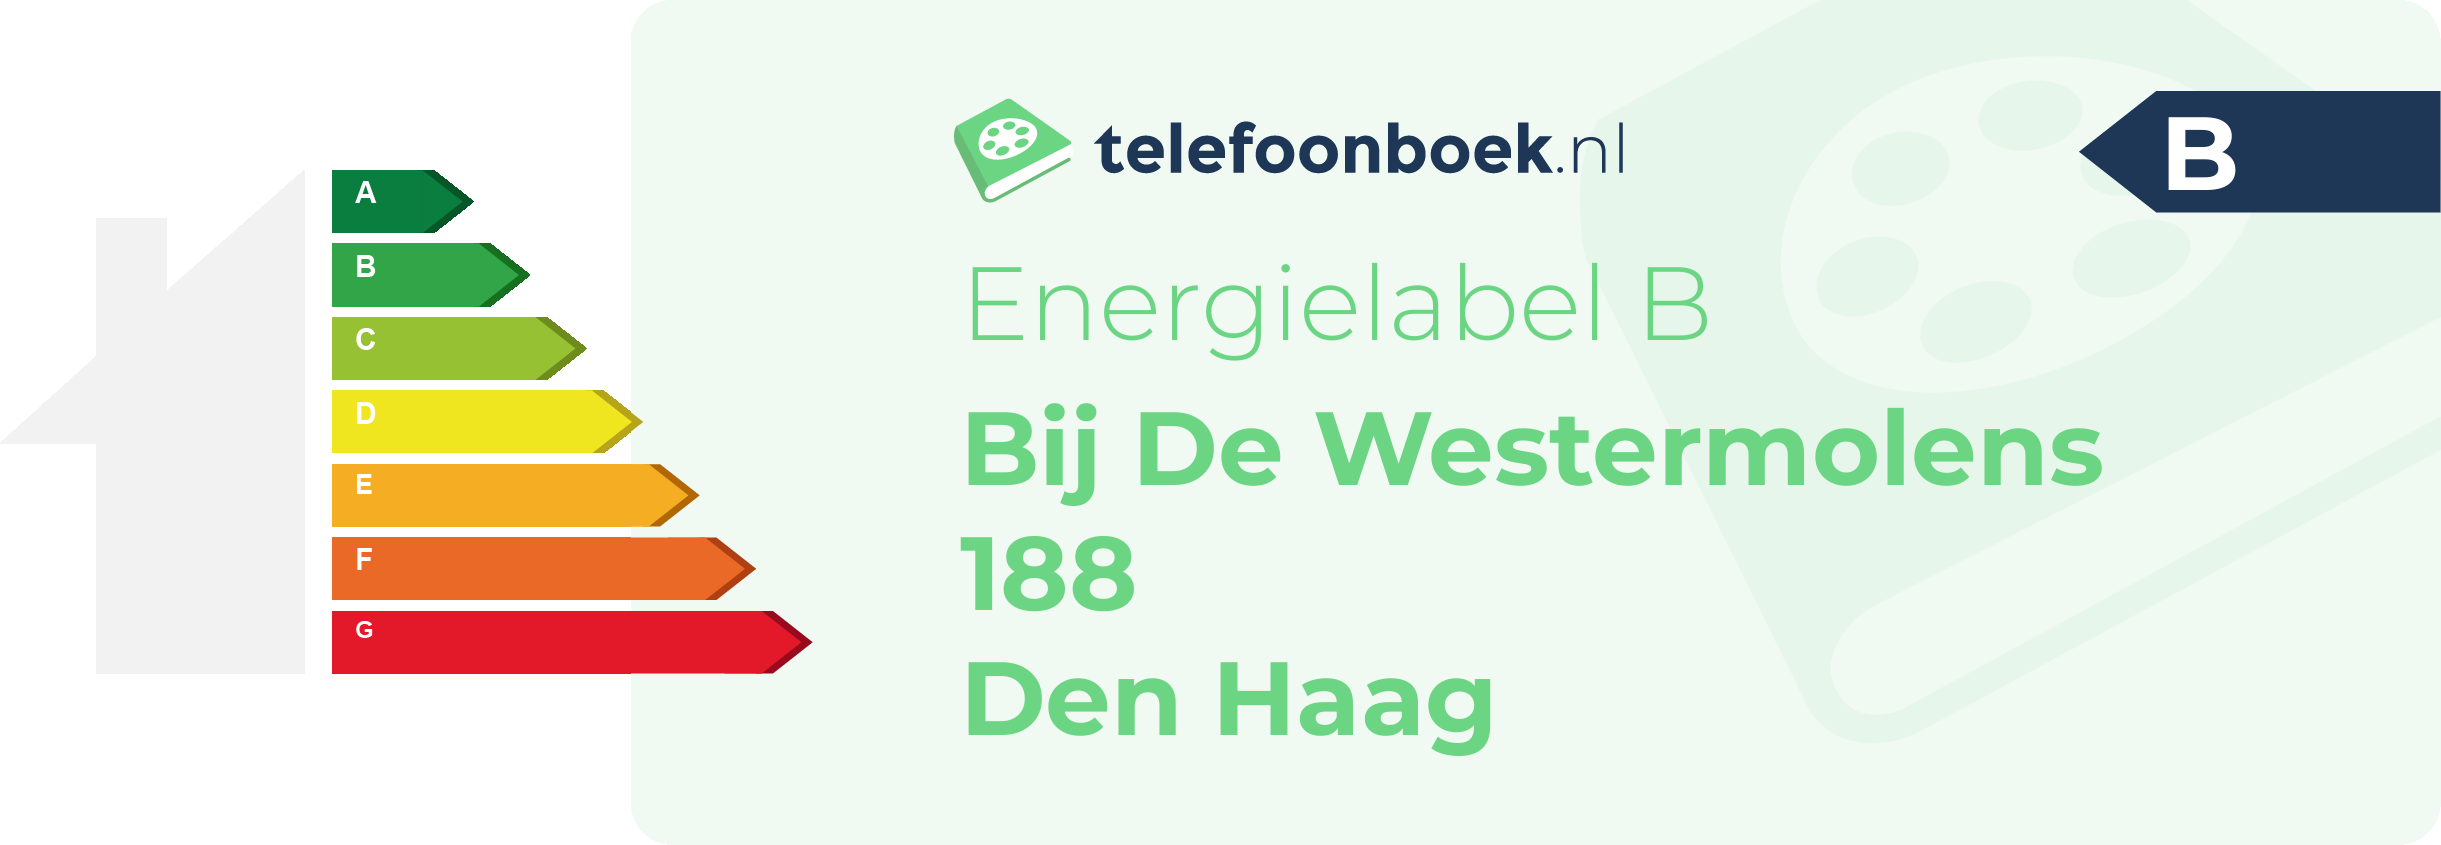 Energielabel Bij De Westermolens 188 Den Haag